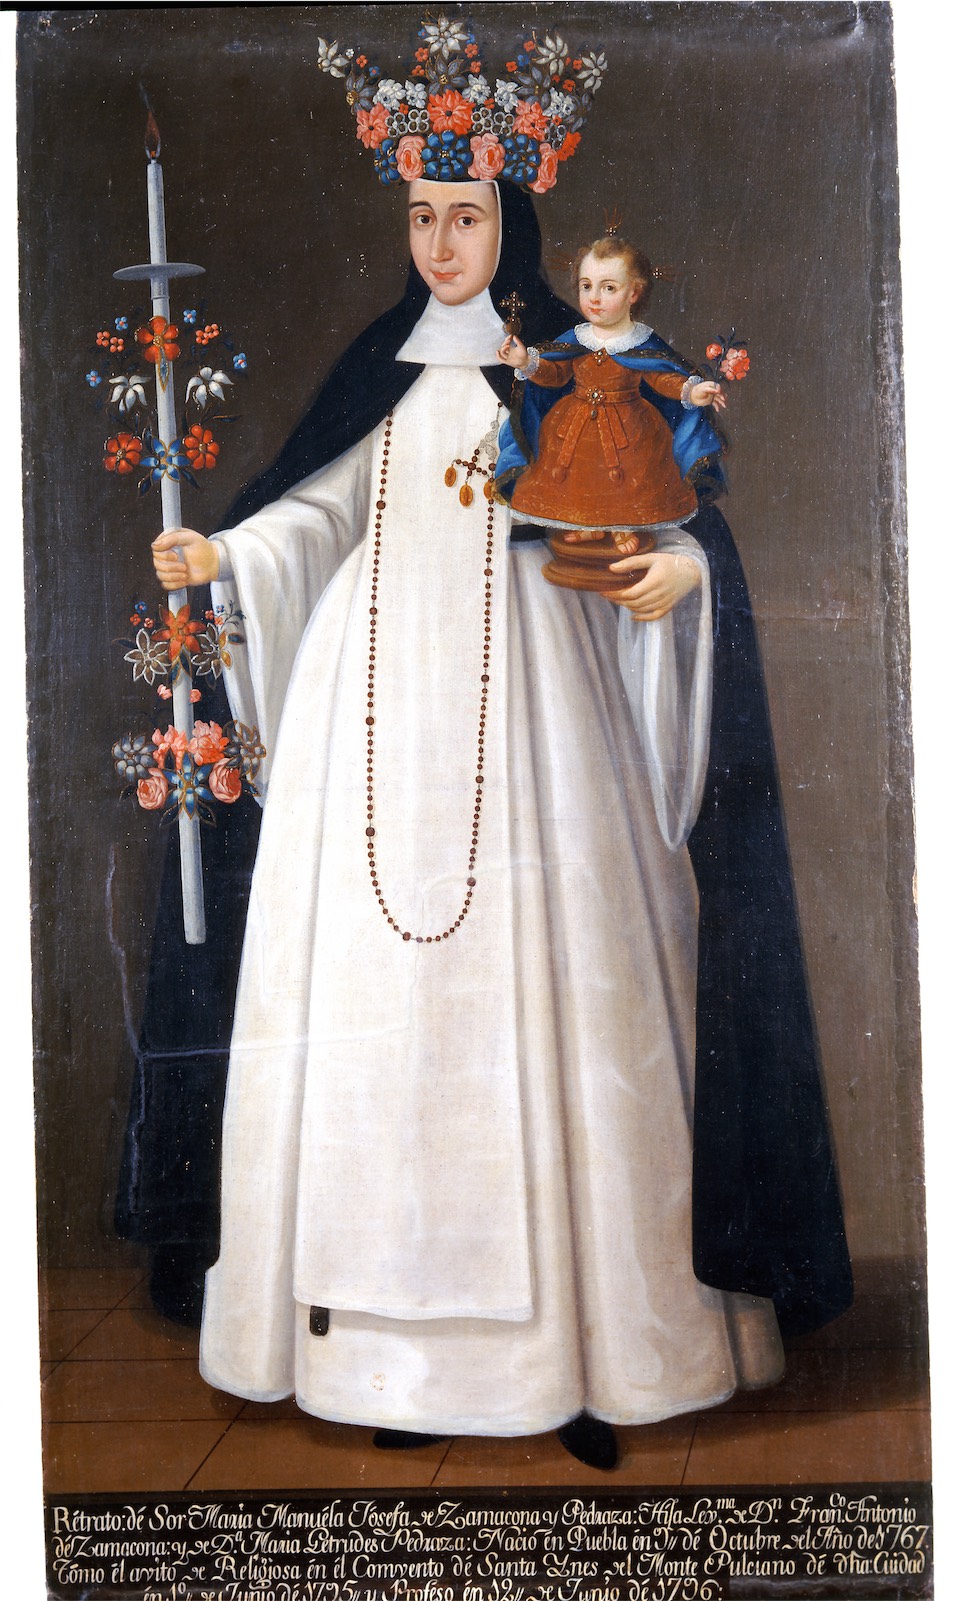 Sor María Manuela Josefa de Zamacona y Pedroza